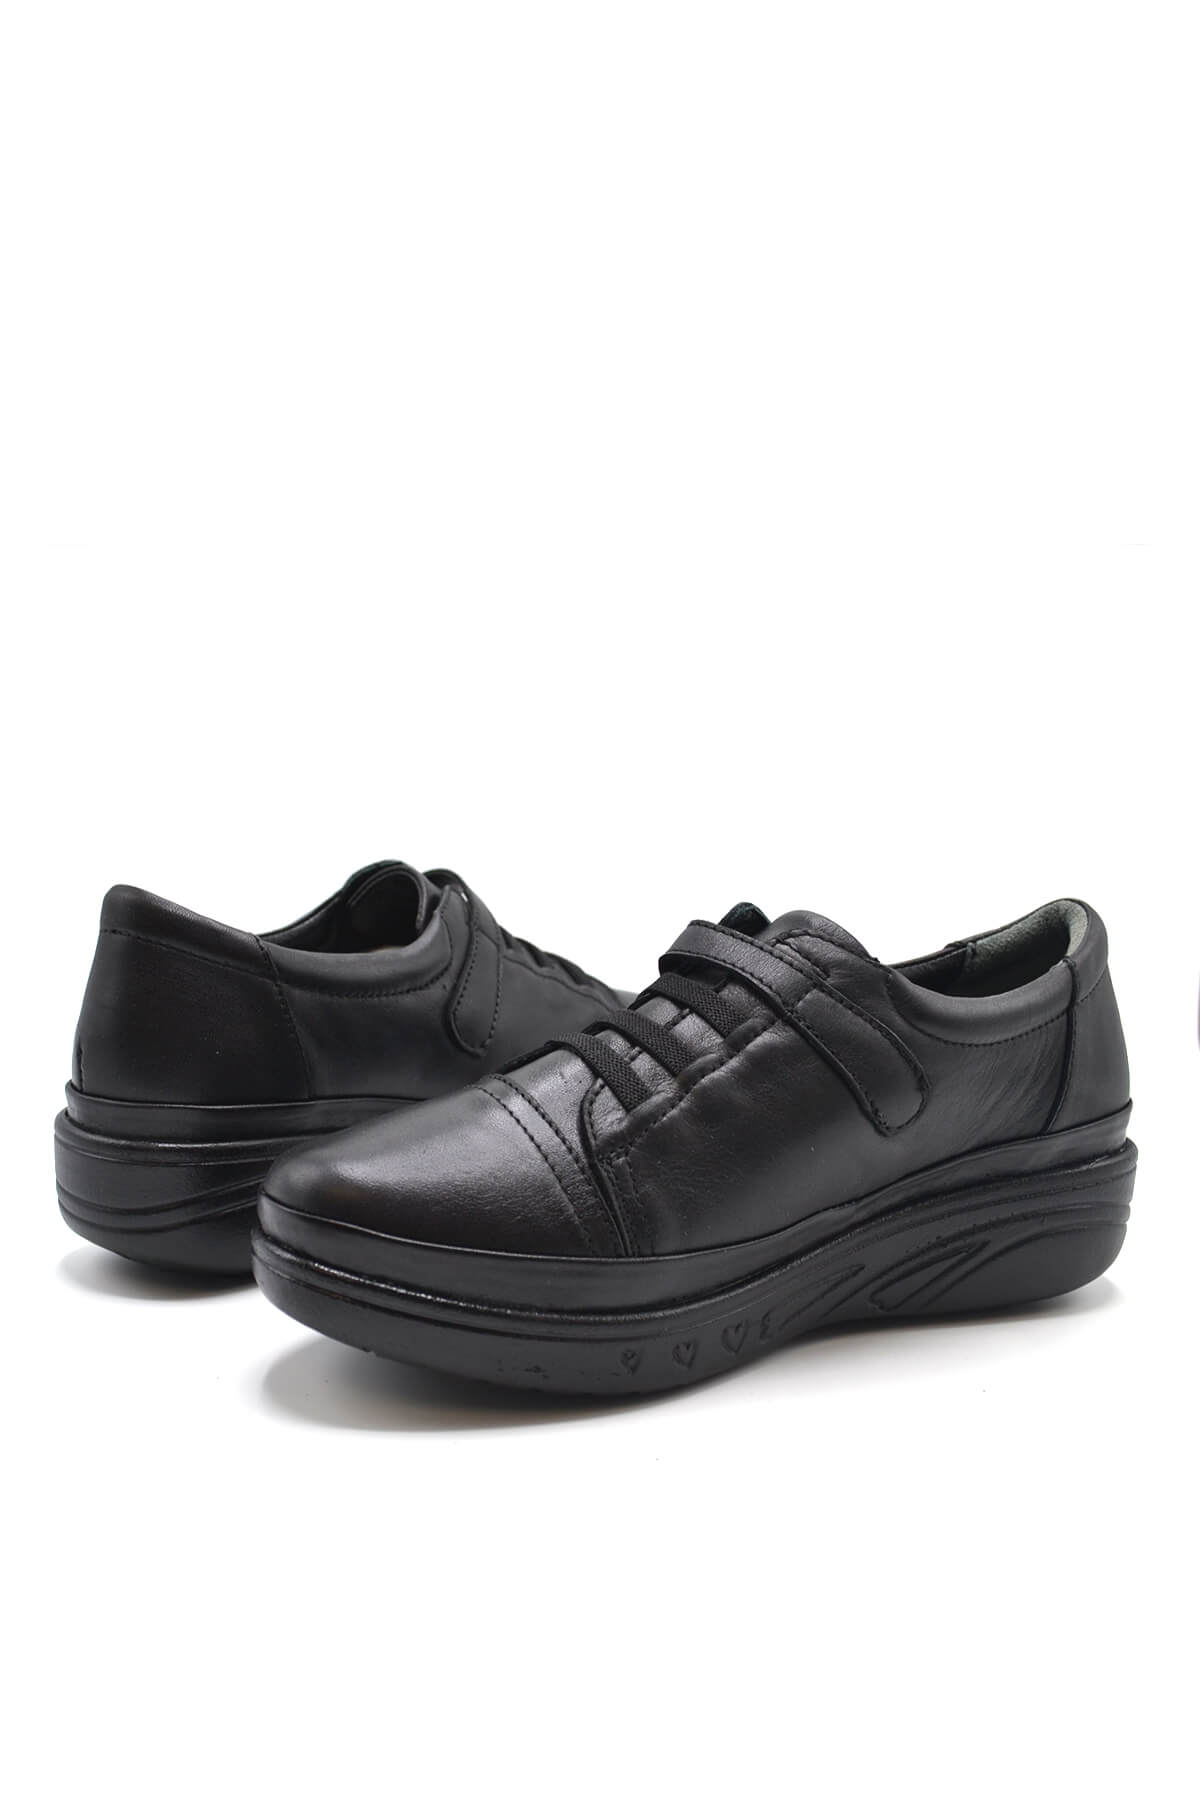 Kadın Comfort Deri Ayakkabı Siyah 1820524K - Thumbnail